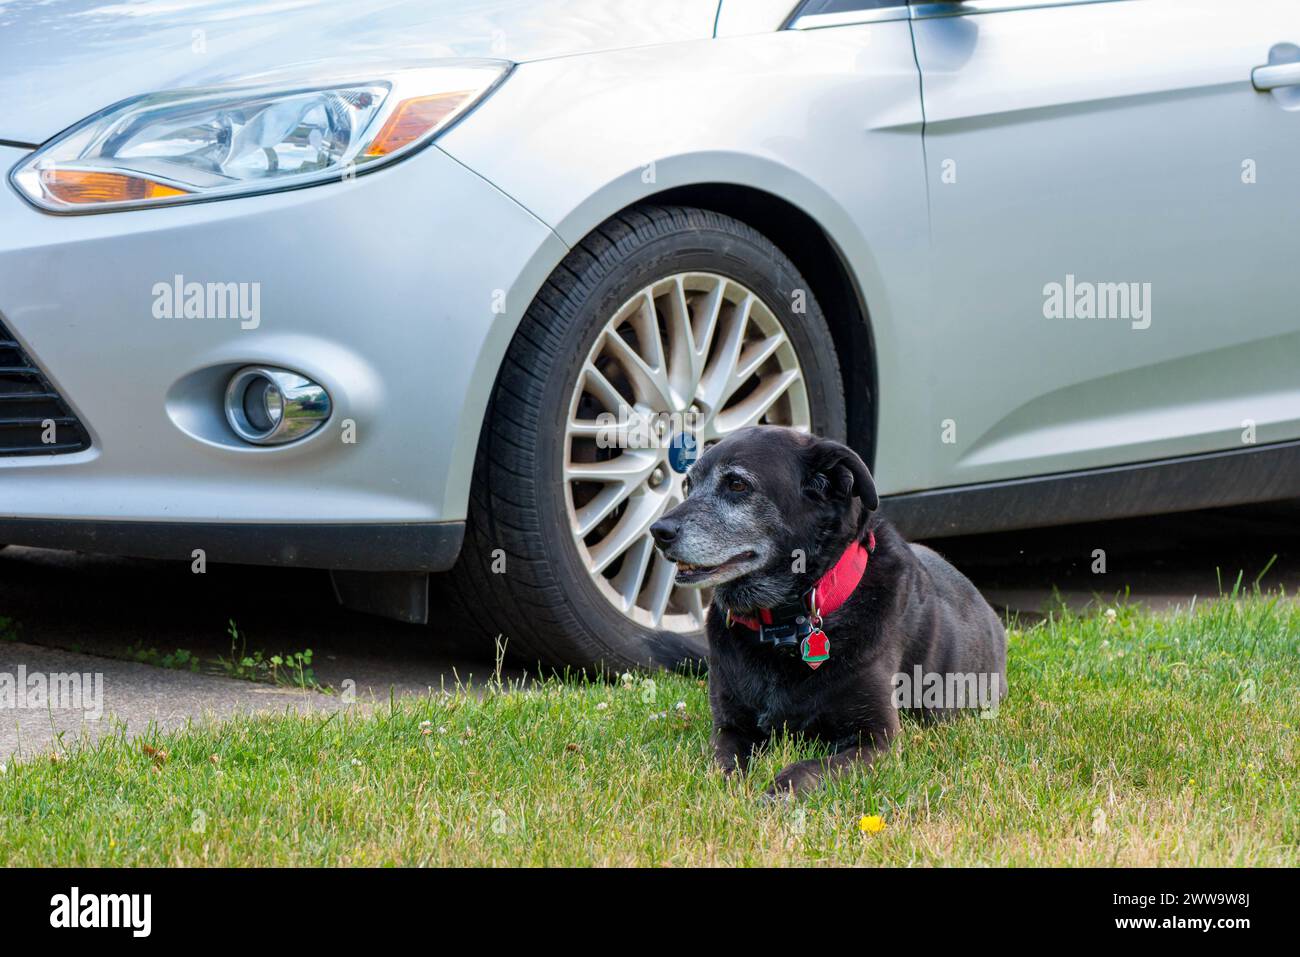 POTTERVILLE, MI - 23. JUNI 2020: Senior Black Dog ruht neben dem Auto. Stockfoto